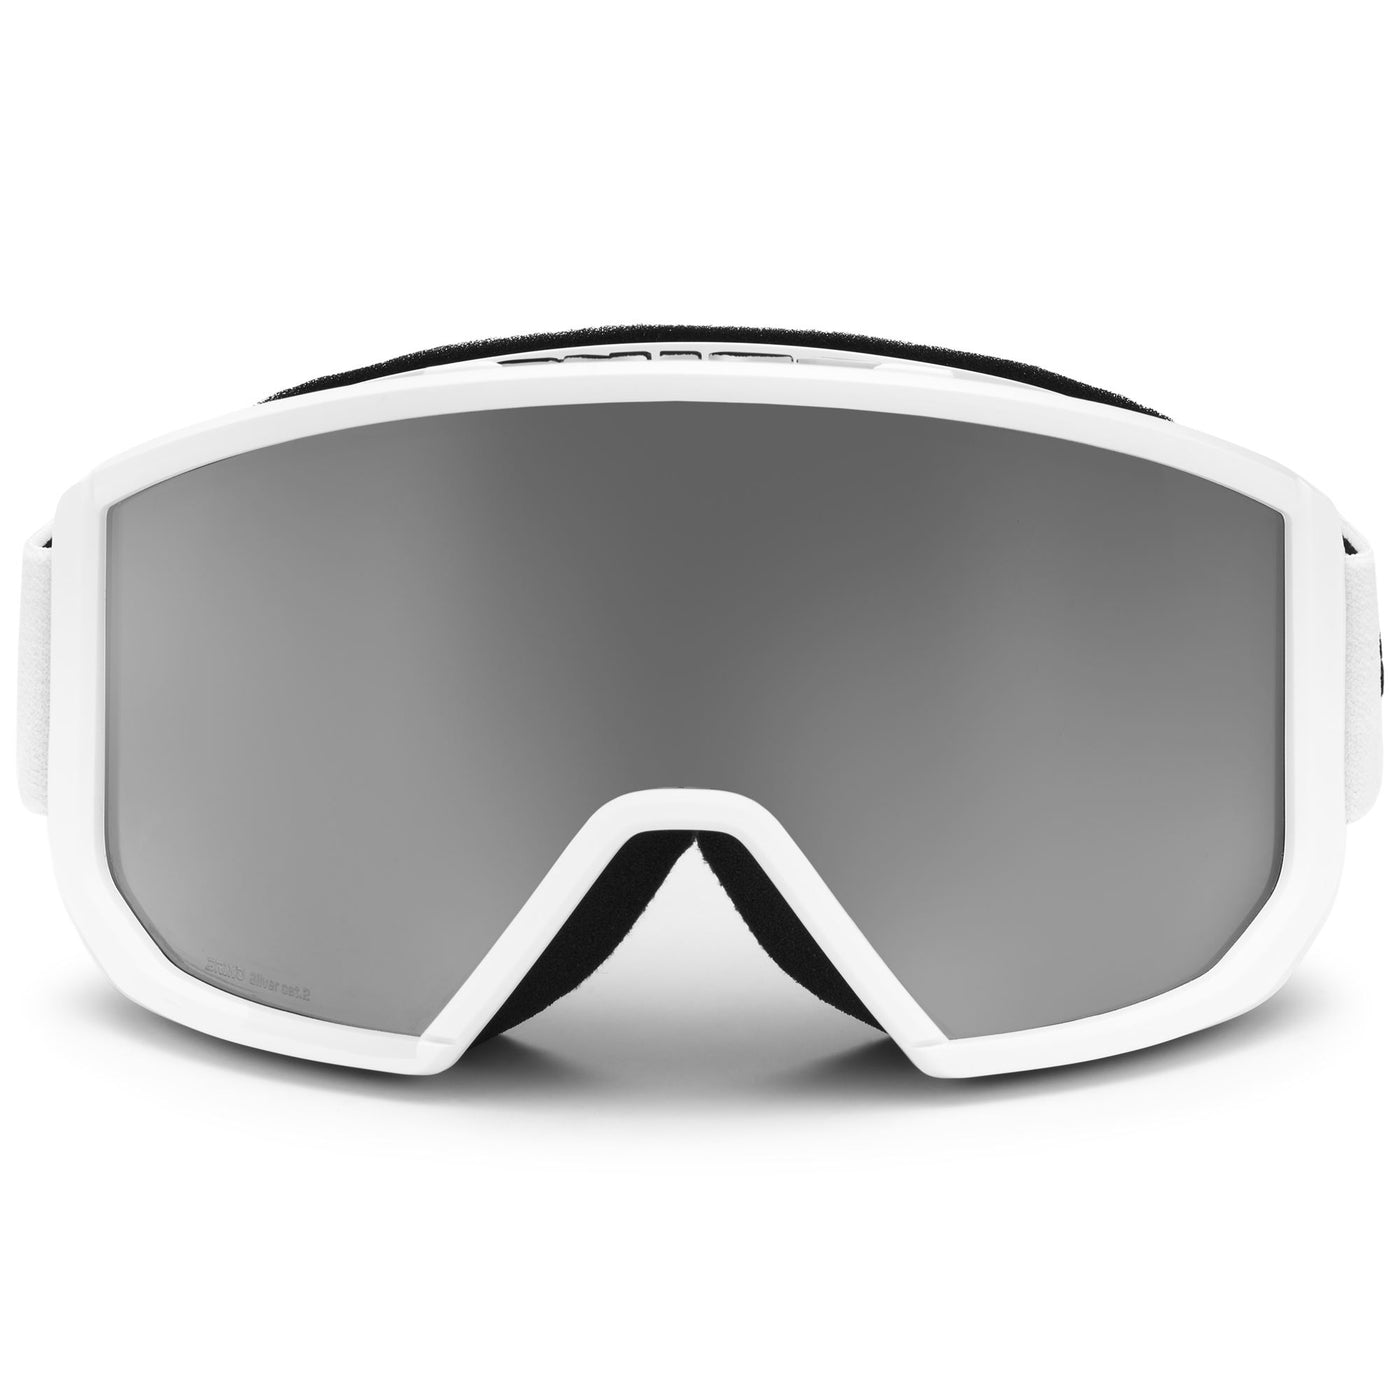 Goggles Unisex VULCANO MASK 2.0 Ski  Goggles MATT WHITE - SM2 Photo (jpg Rgb)			